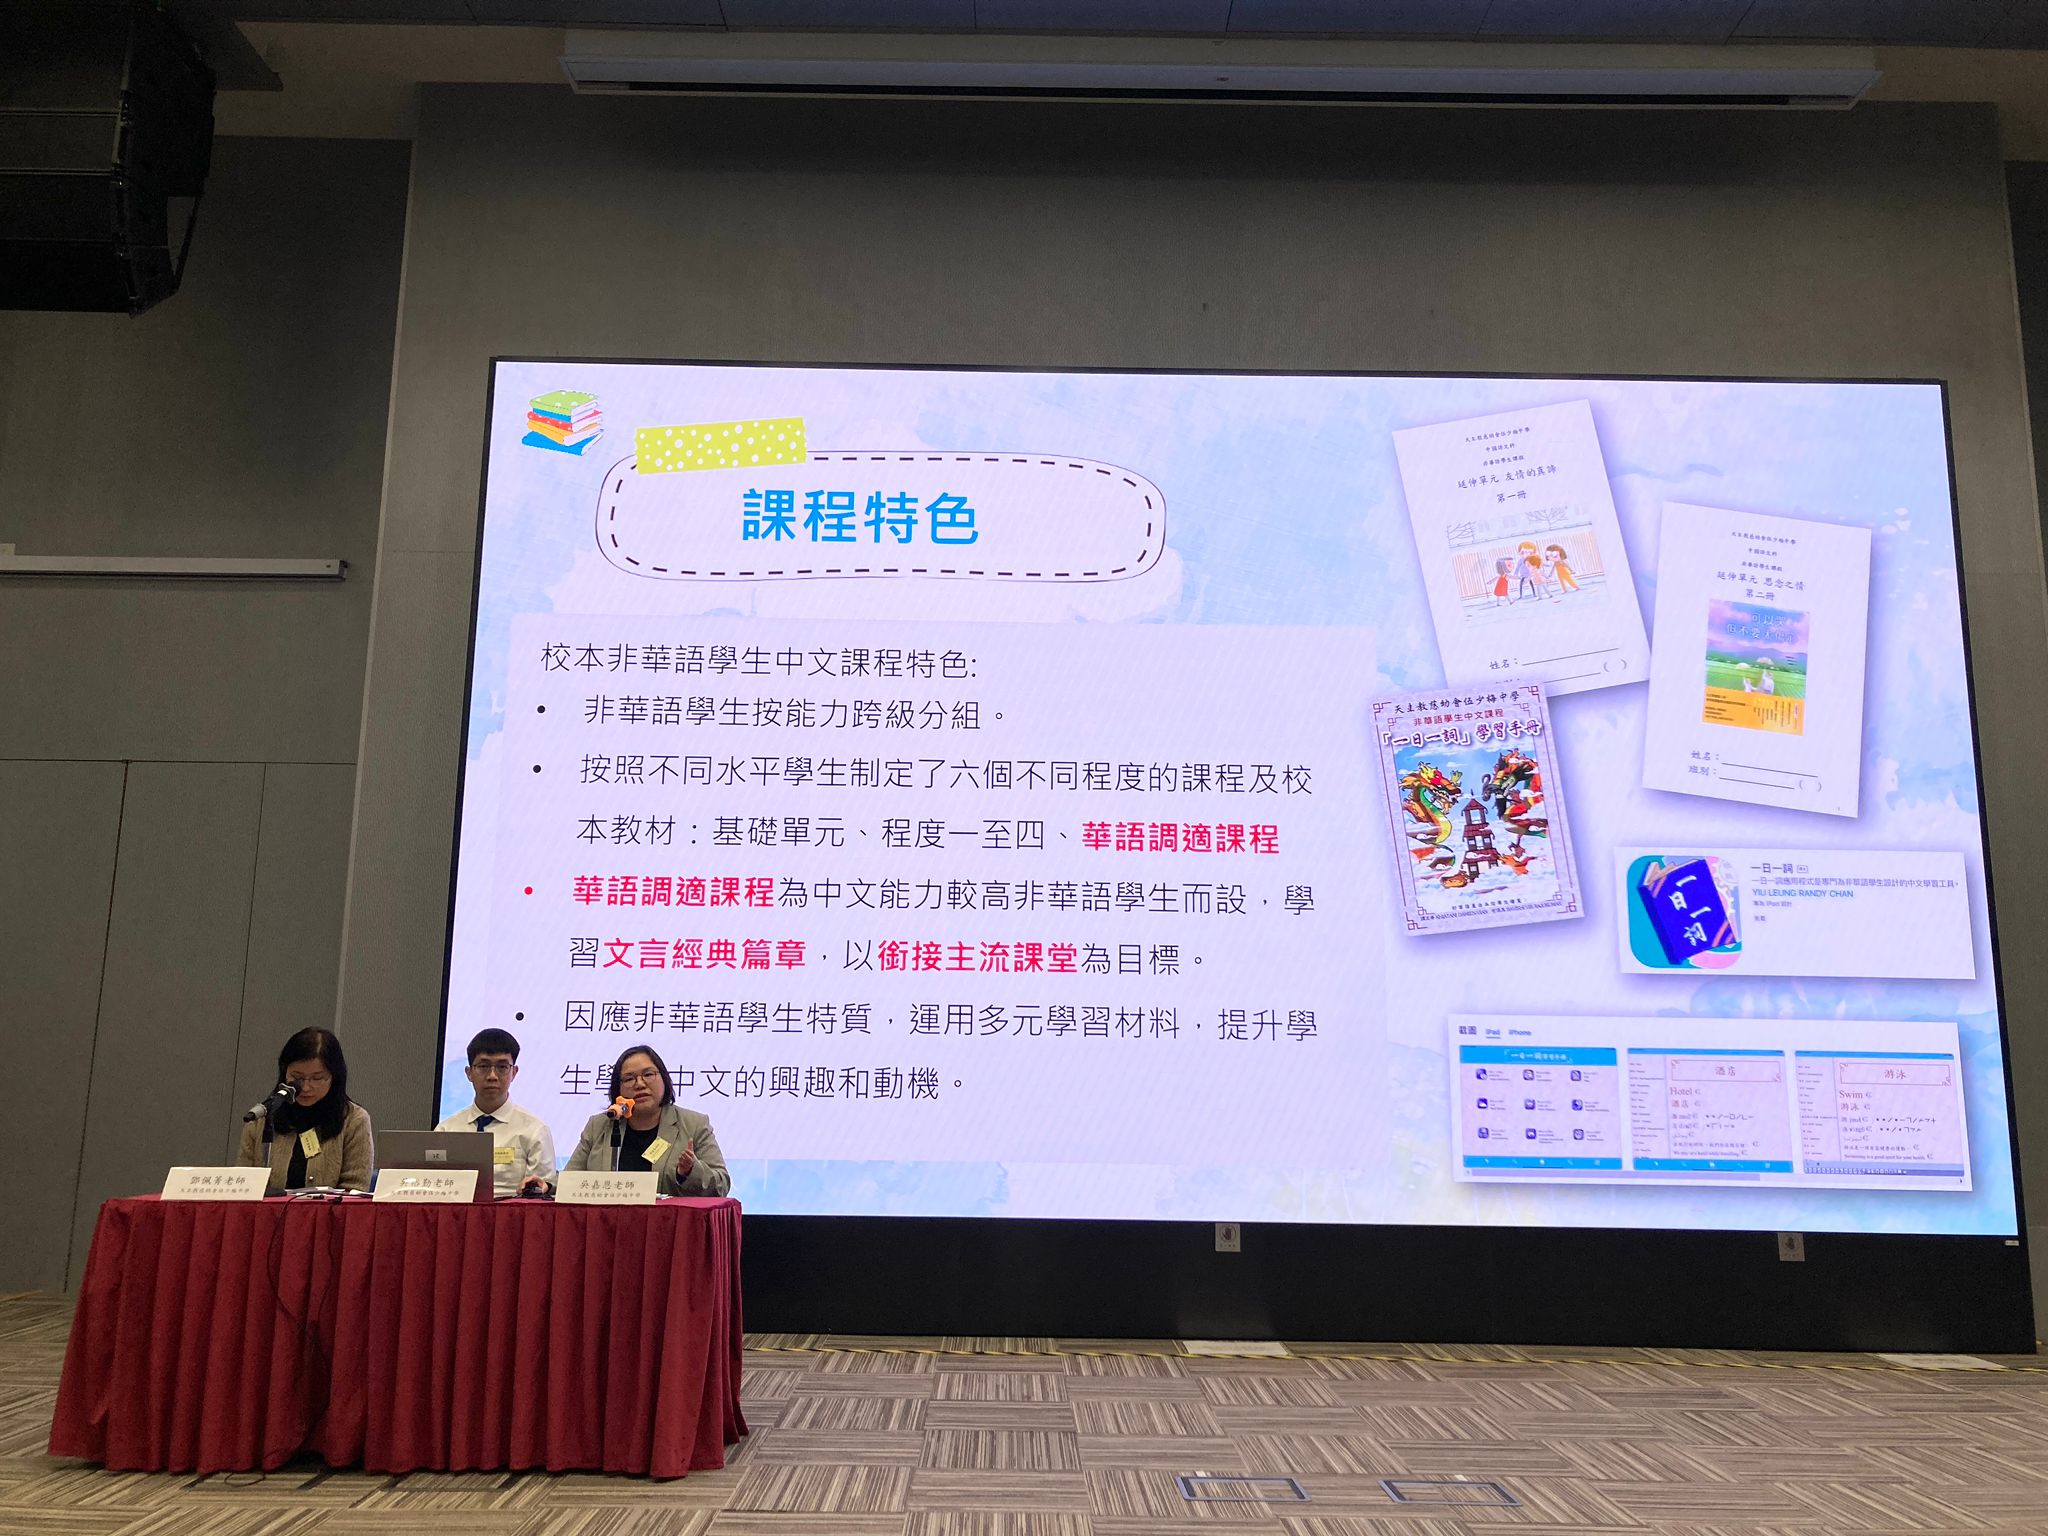 教師代表分享「非華語學生的文言經典學習」校本實踐經驗